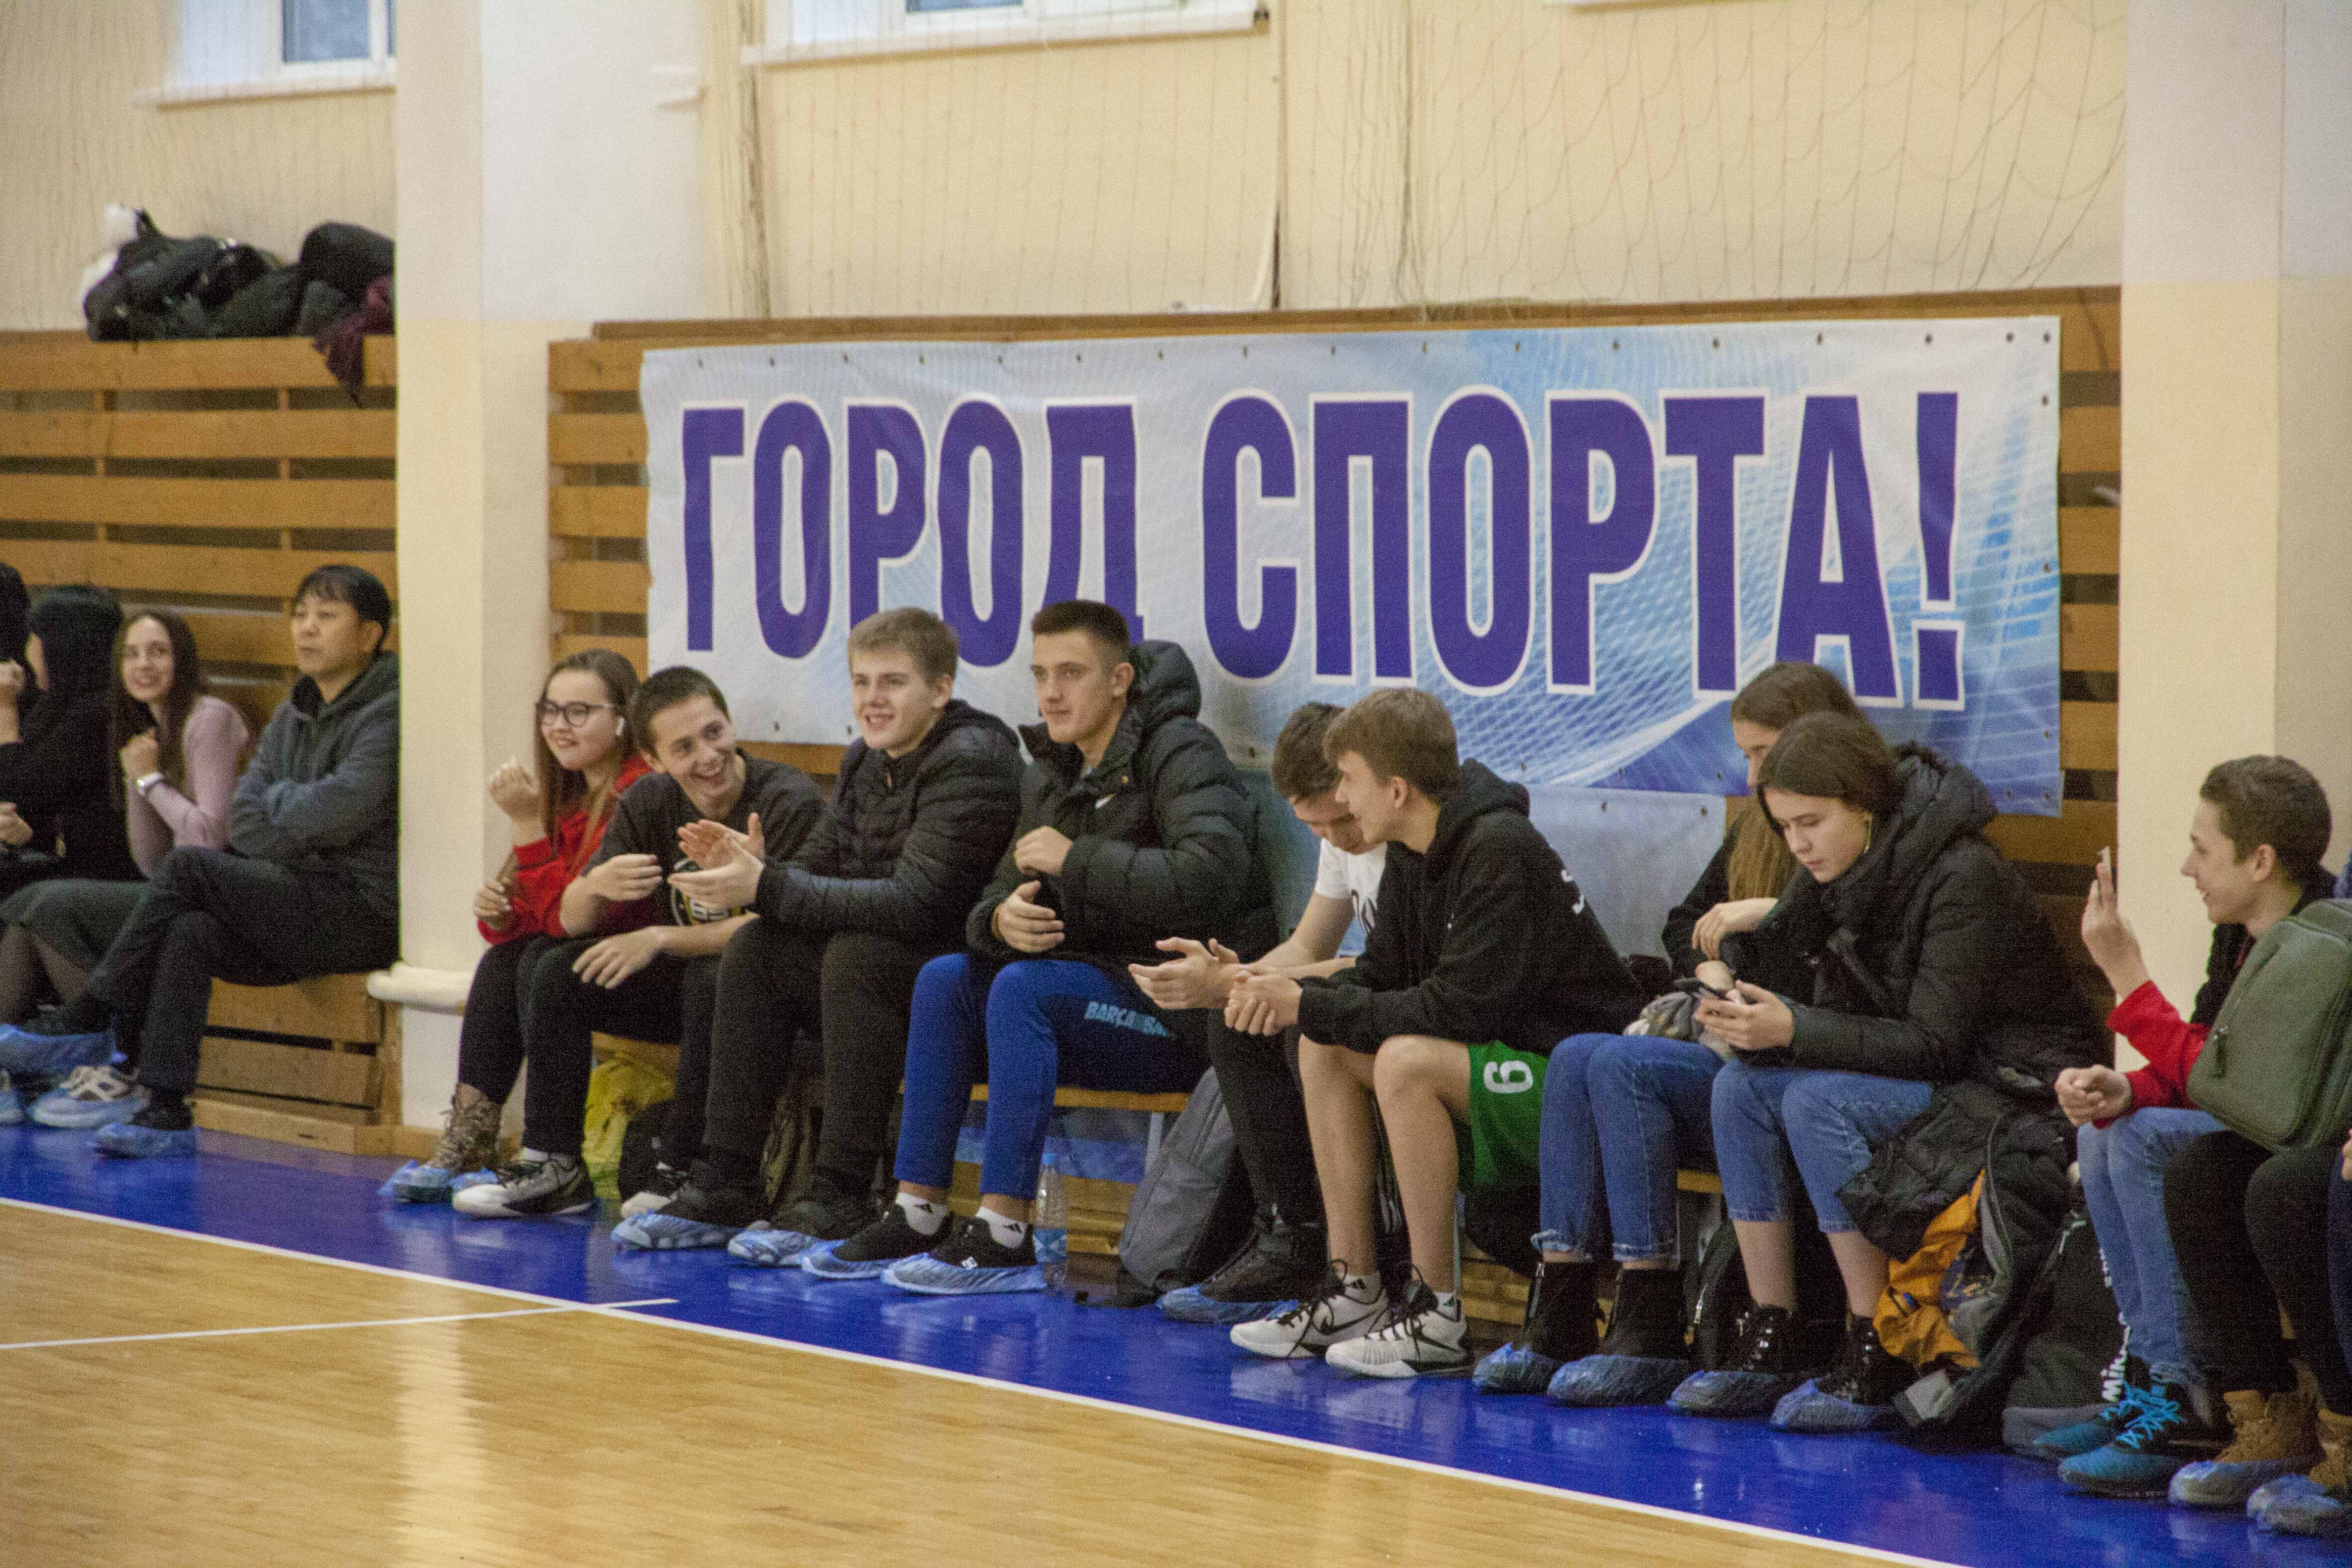 Муниципальный этап чемпионата СБЛ "КЭС-Баскет" в Южно-Сахалинске